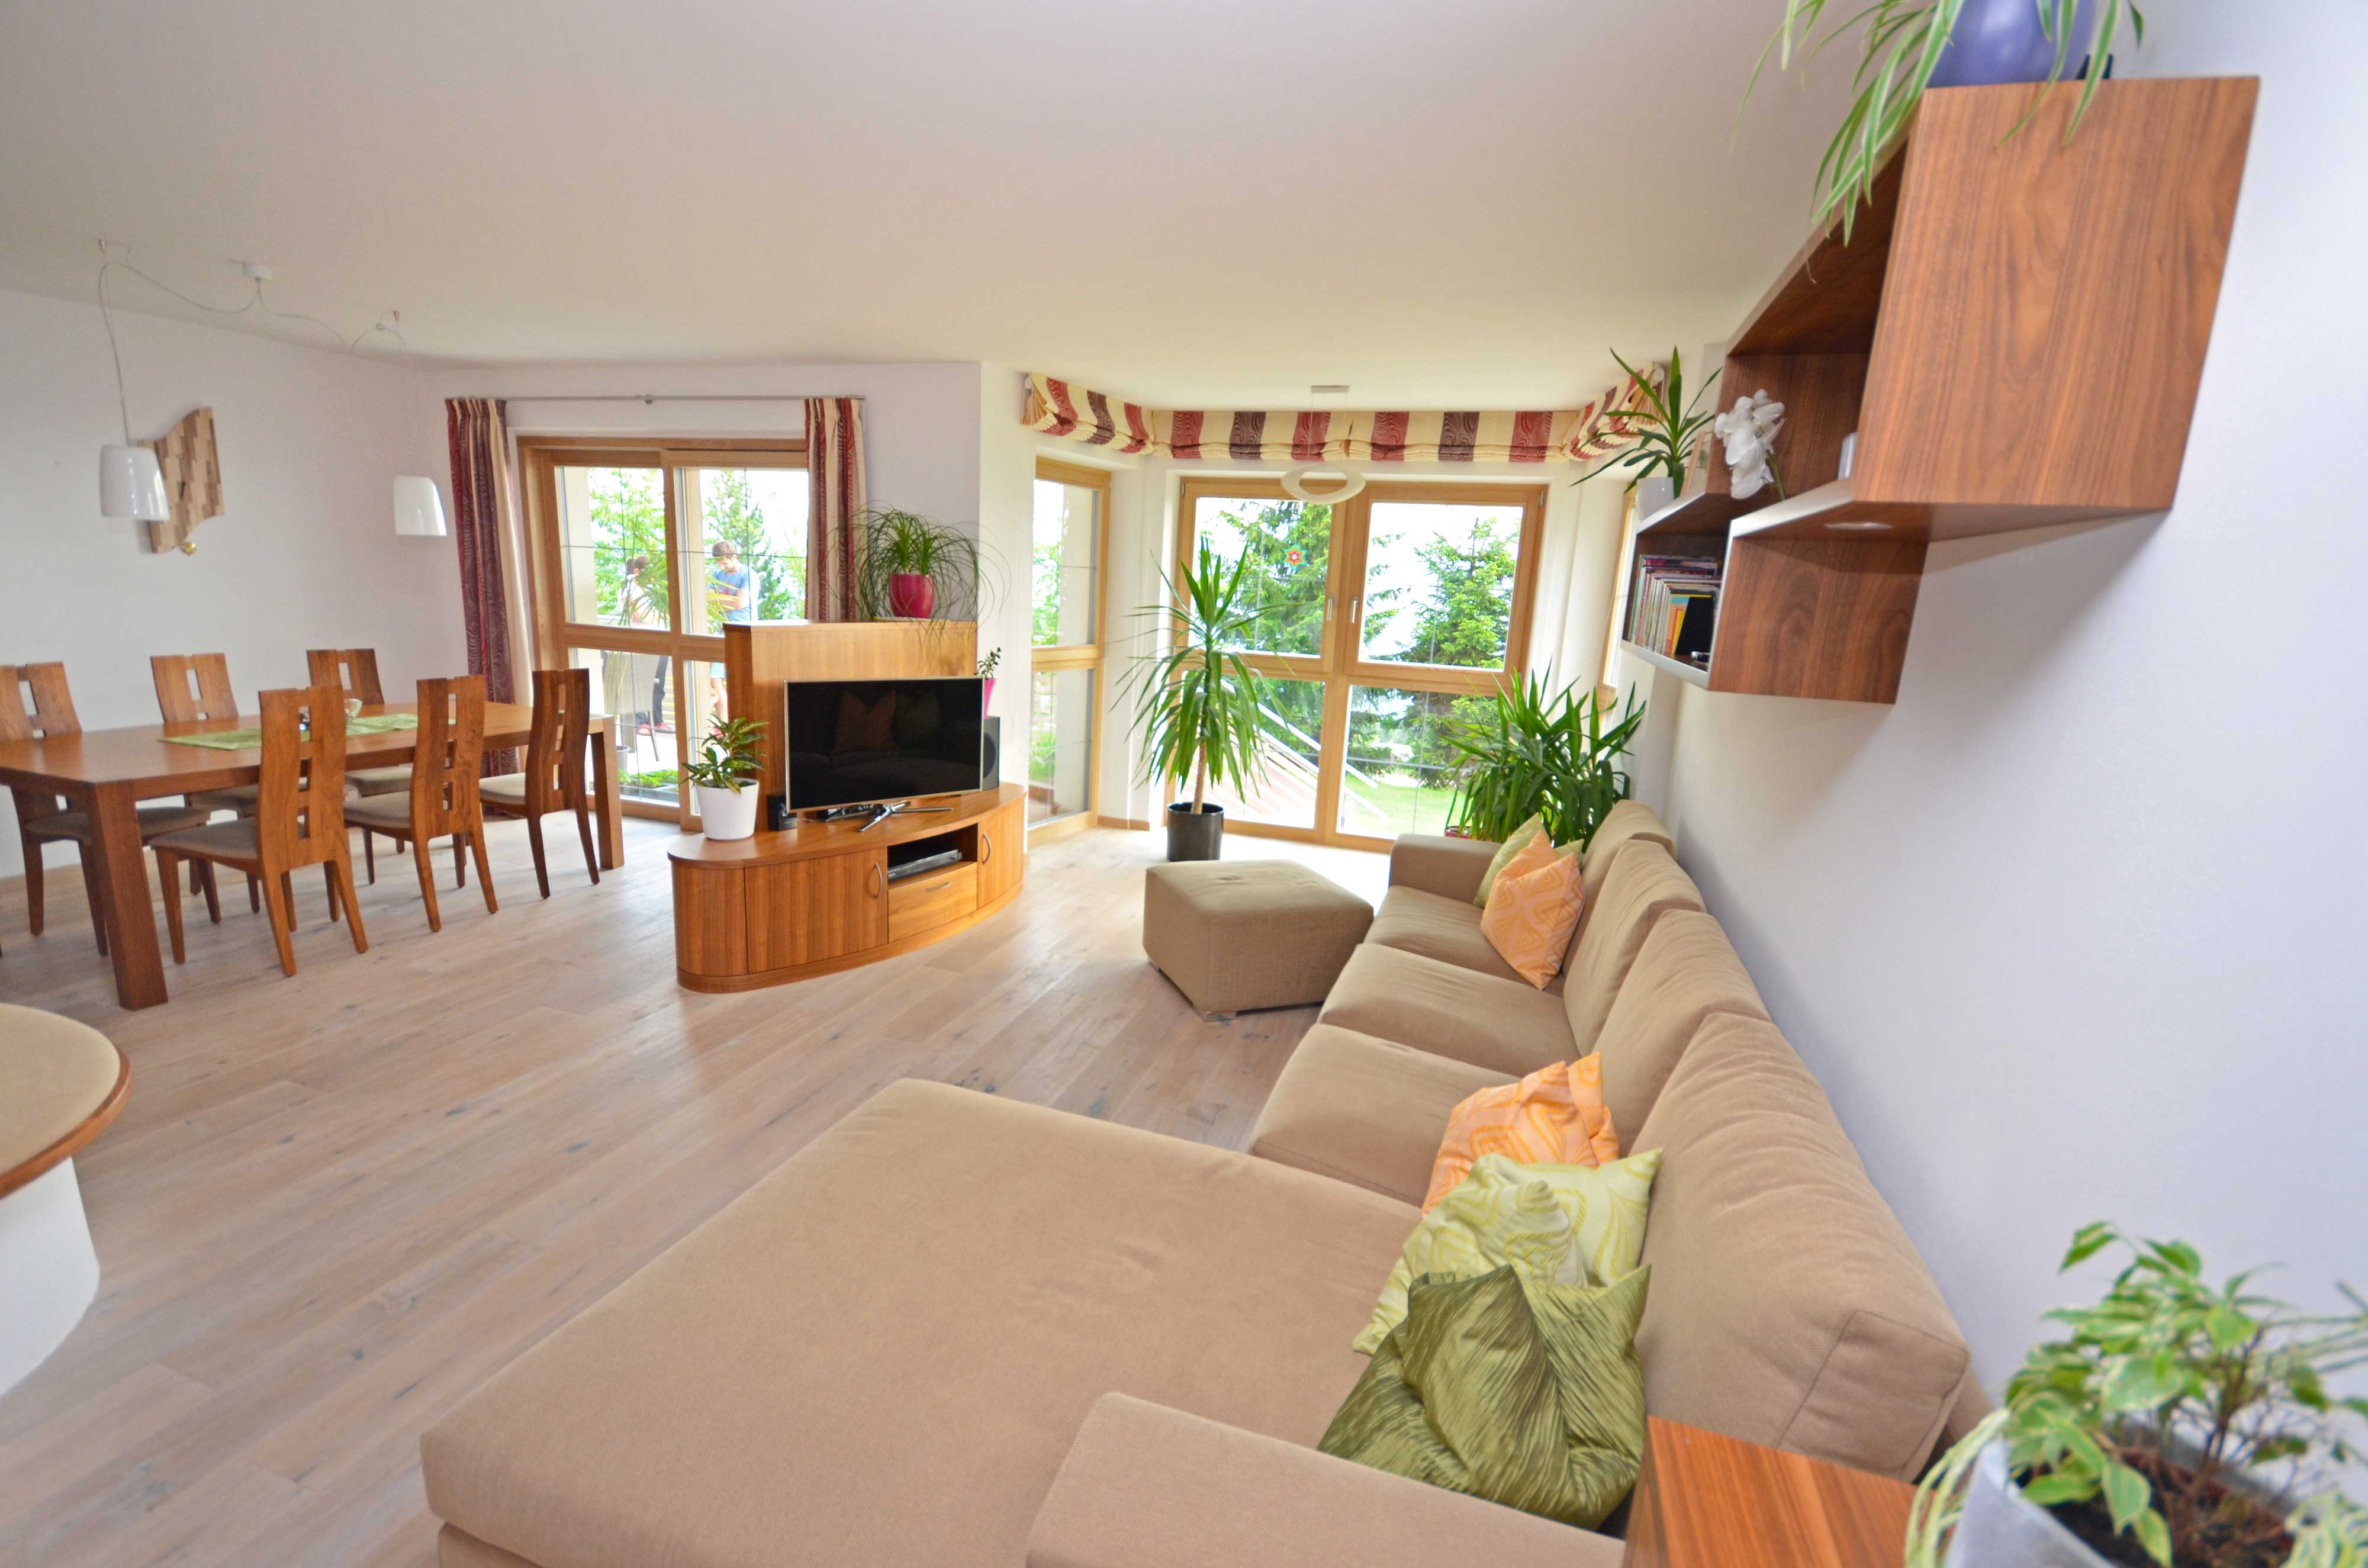 Schönes geräumiges Wohnzimmer mit Couch und Kissen in verschiedenen Farben